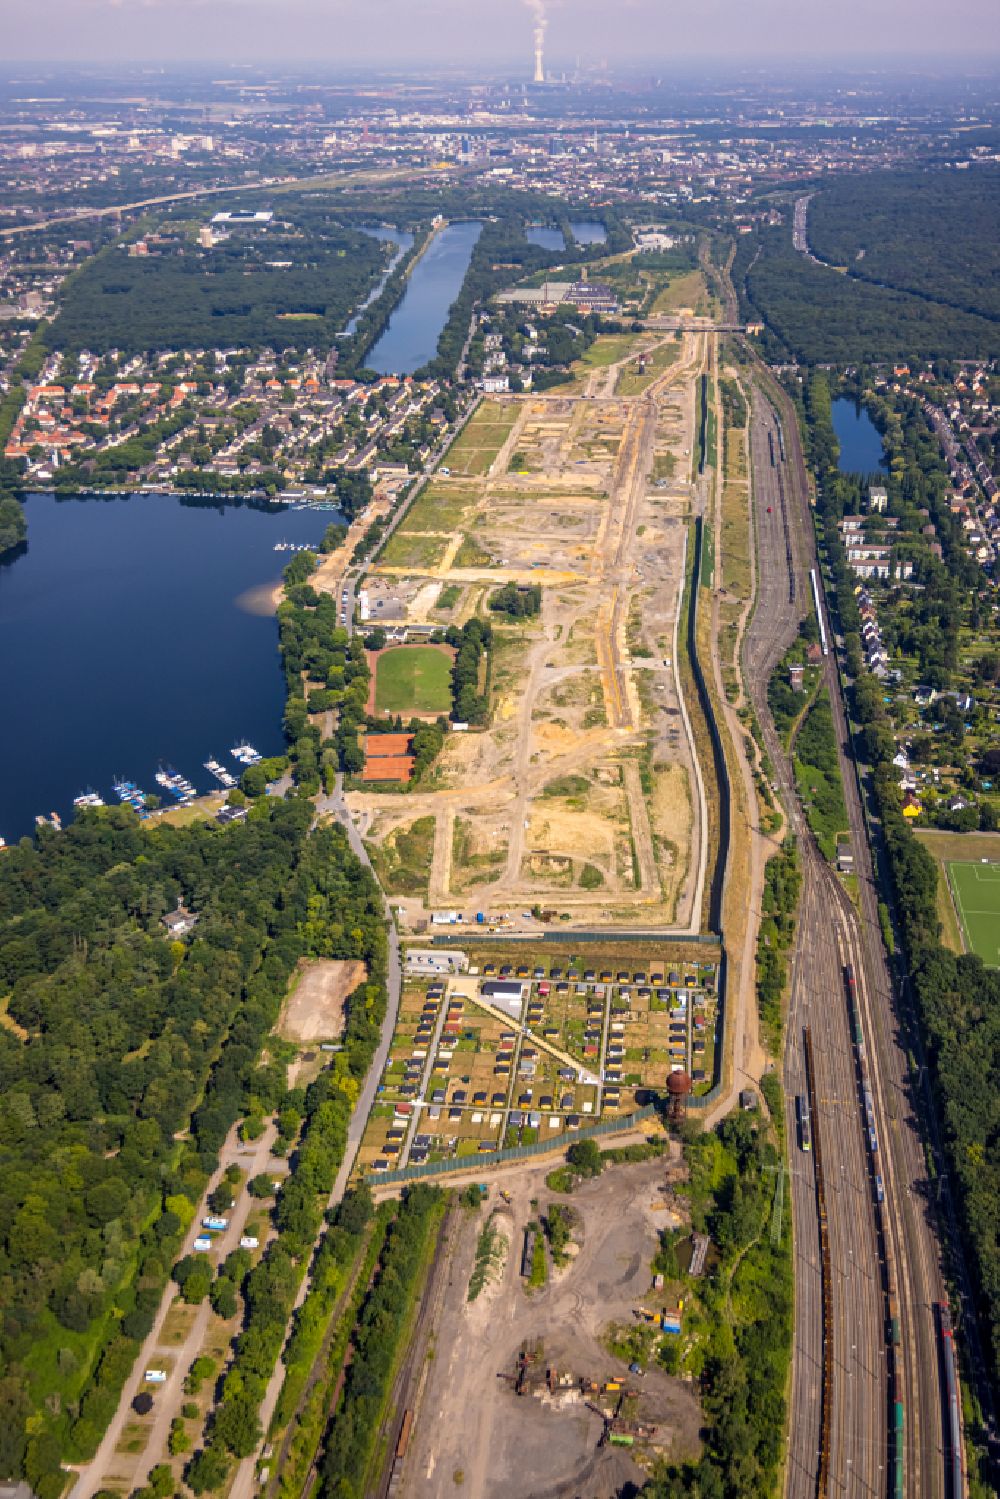 Luftbild Duisburg - Baustellen zum Neubau eines Stadtquartiers 6 Seen Wedau – Wohnen am Wasser in Duisburg im Bundesland Nordrhein-Westfalen, Deutschland